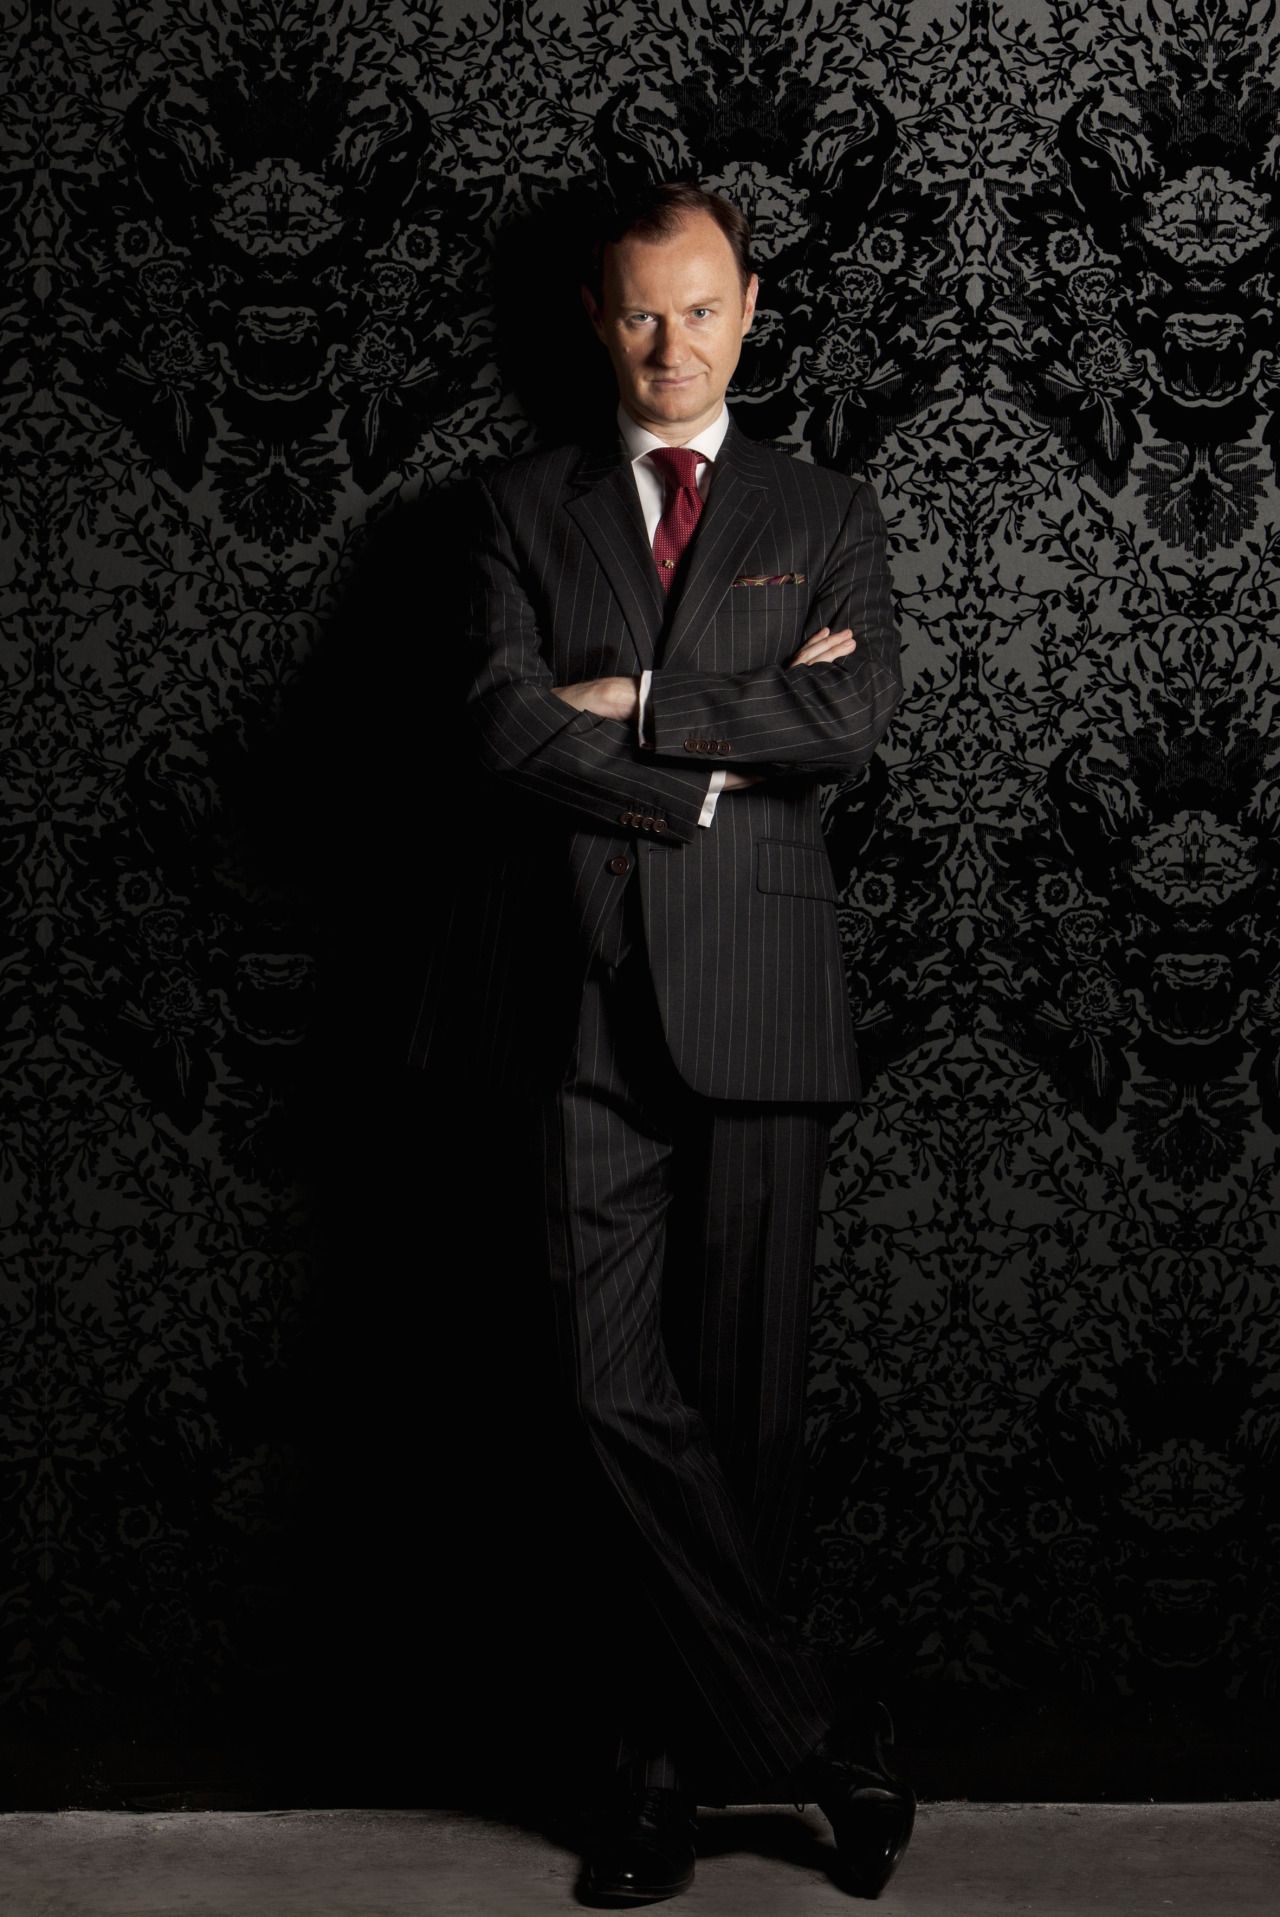 Super Hi Res Mycroft Holmes Adler Wallpaper Promo Image From